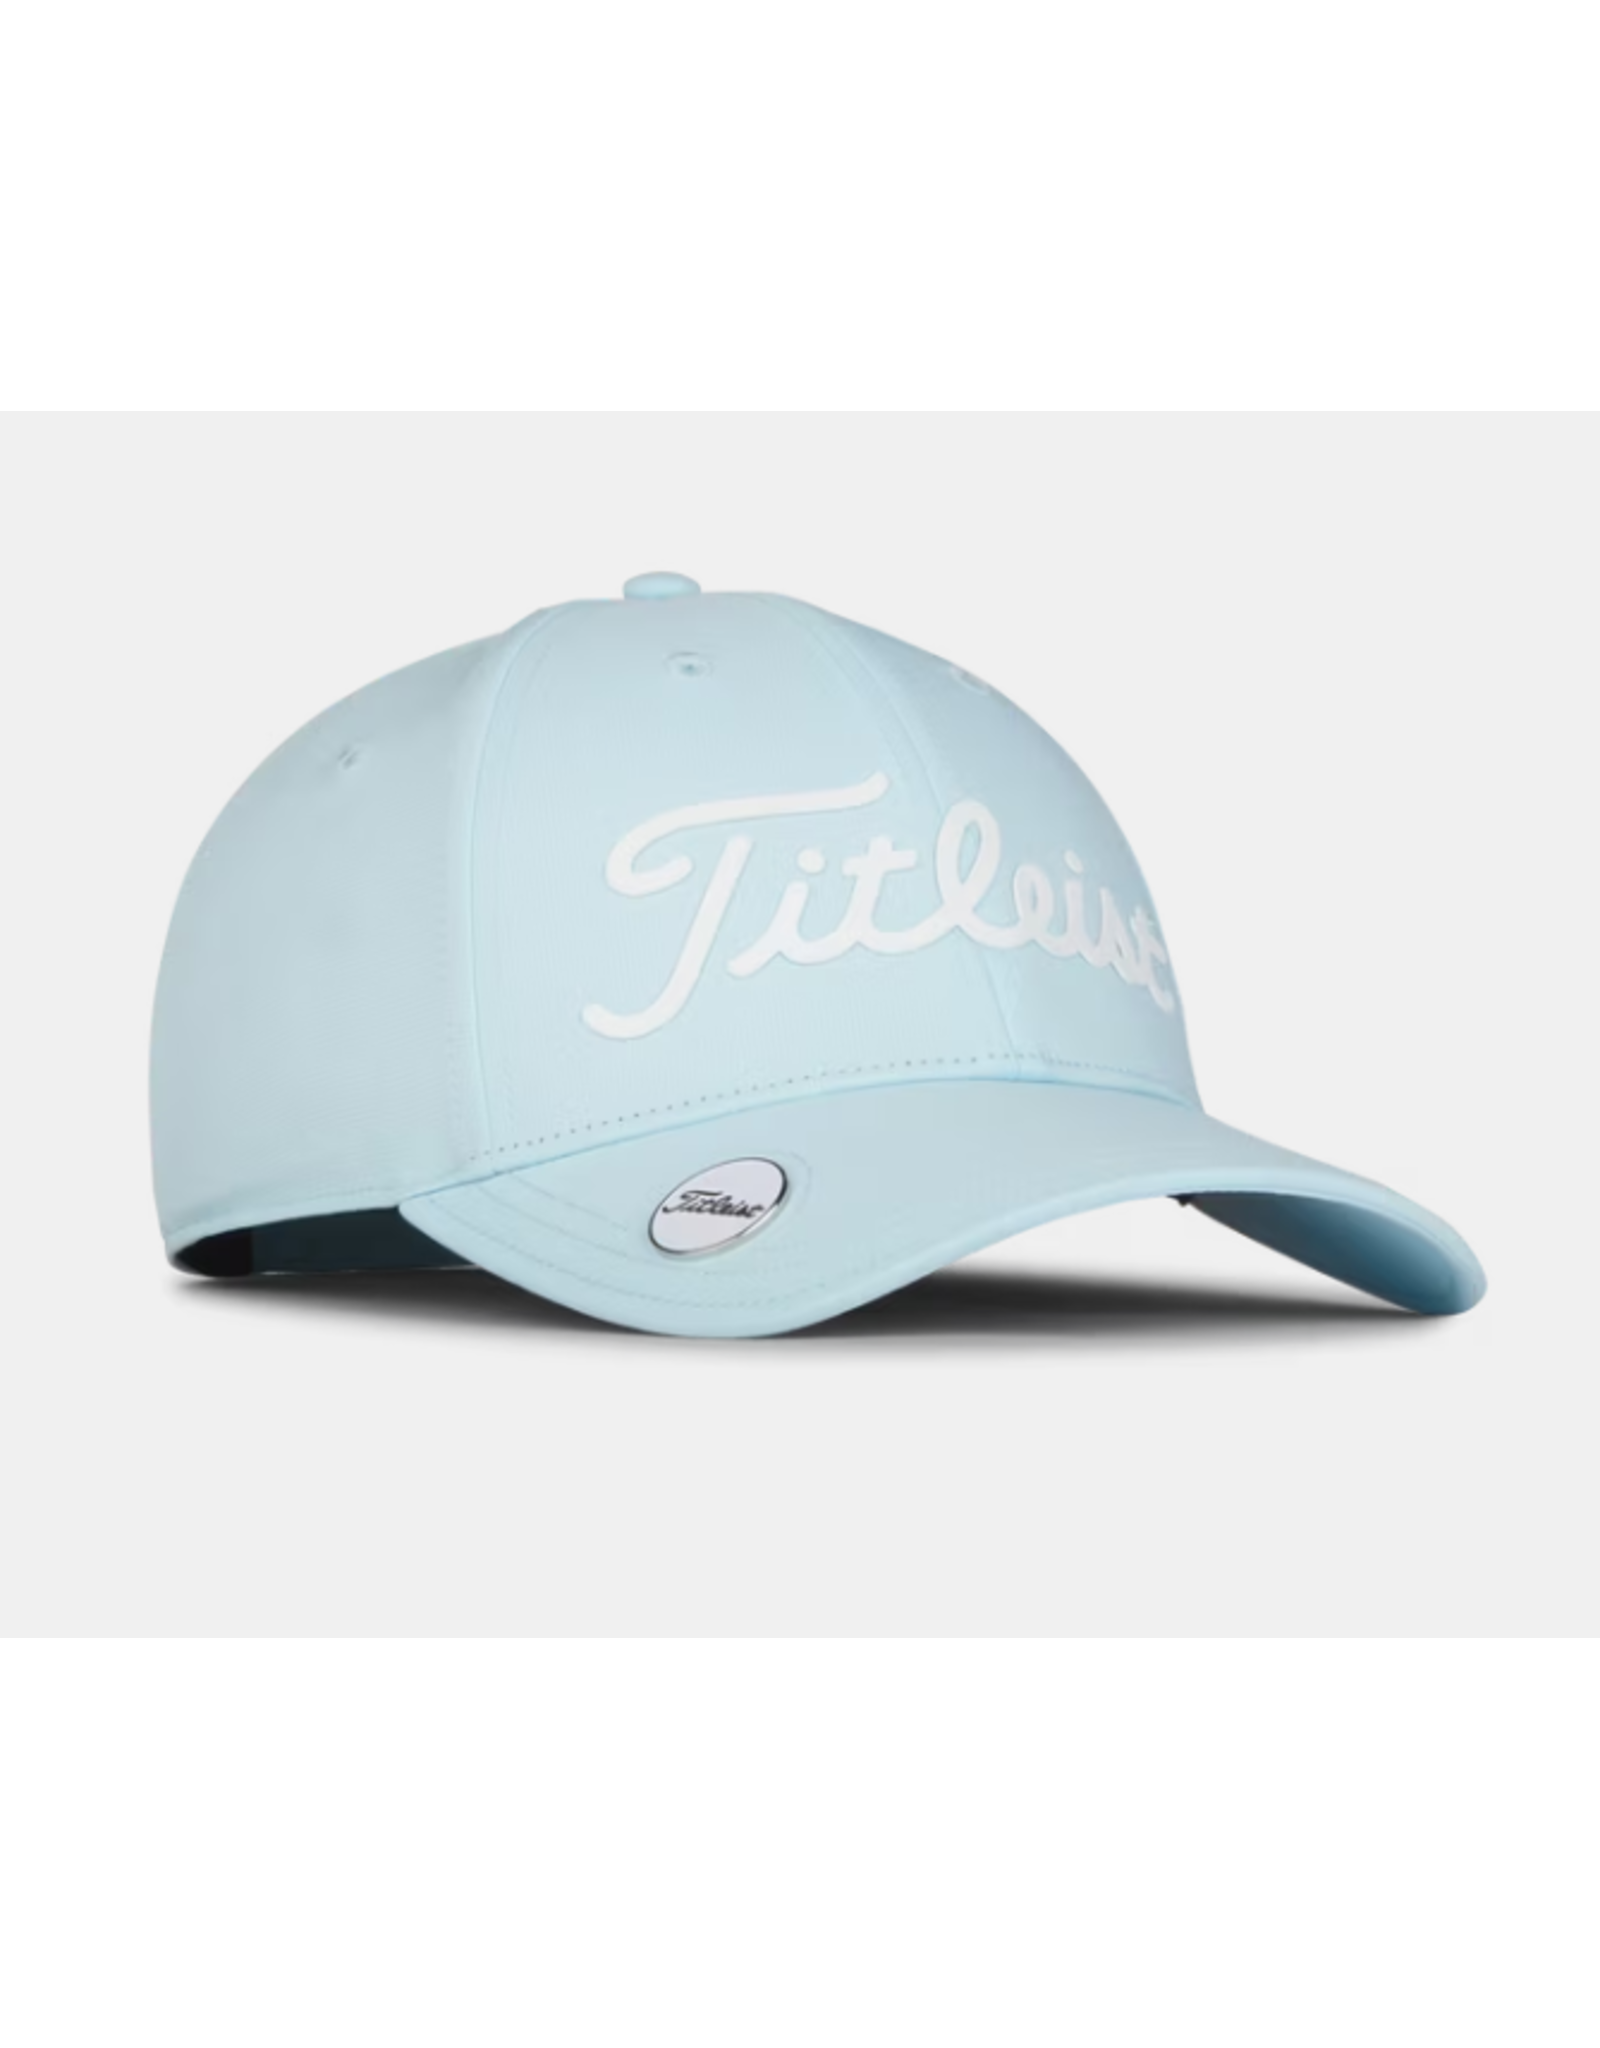 Titleist Titleist Players Performance Ball Marker Women's Hat